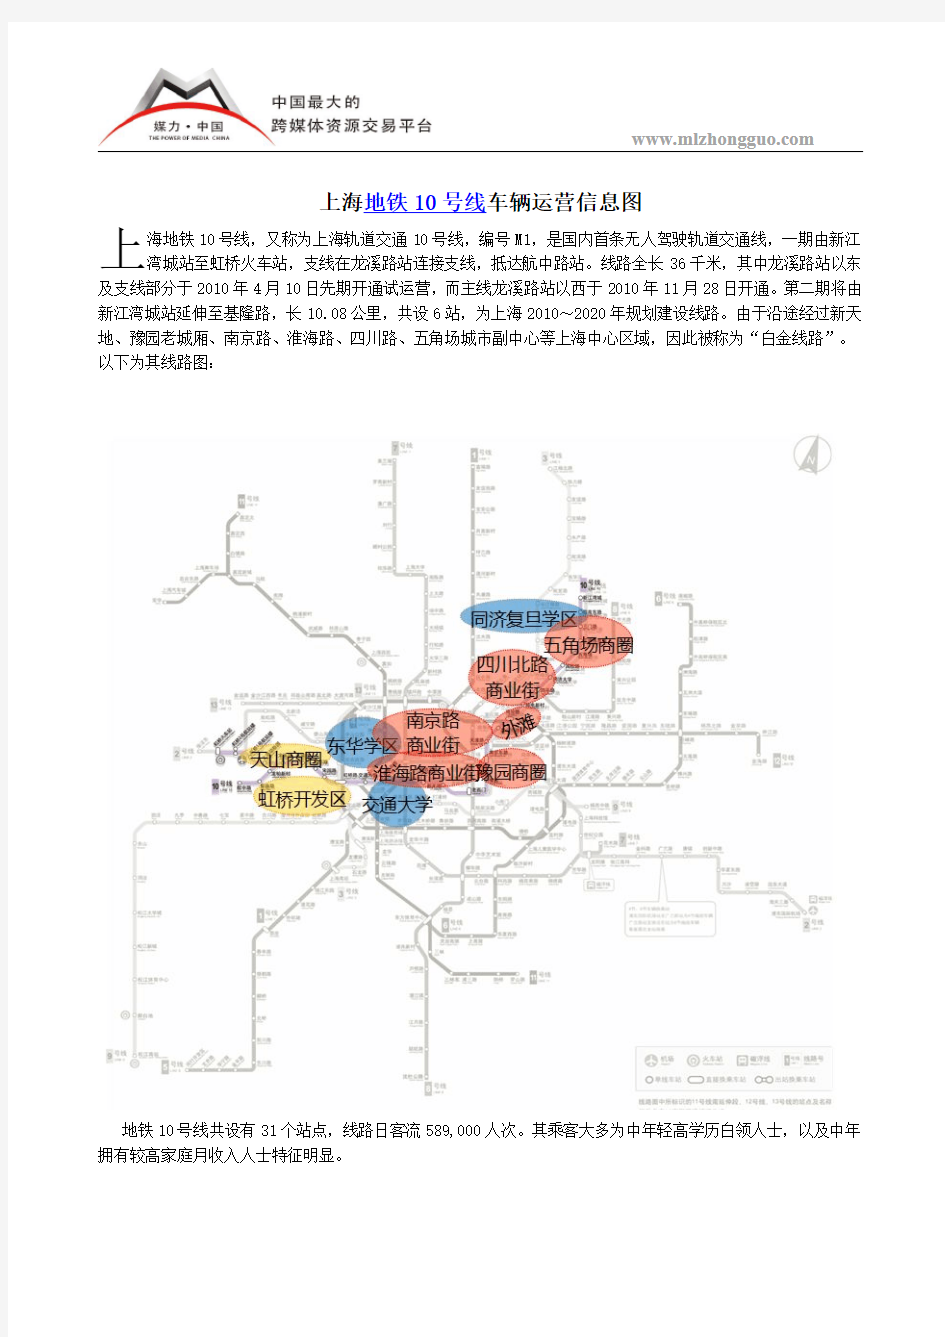 上海地铁10号线车辆运营信息图